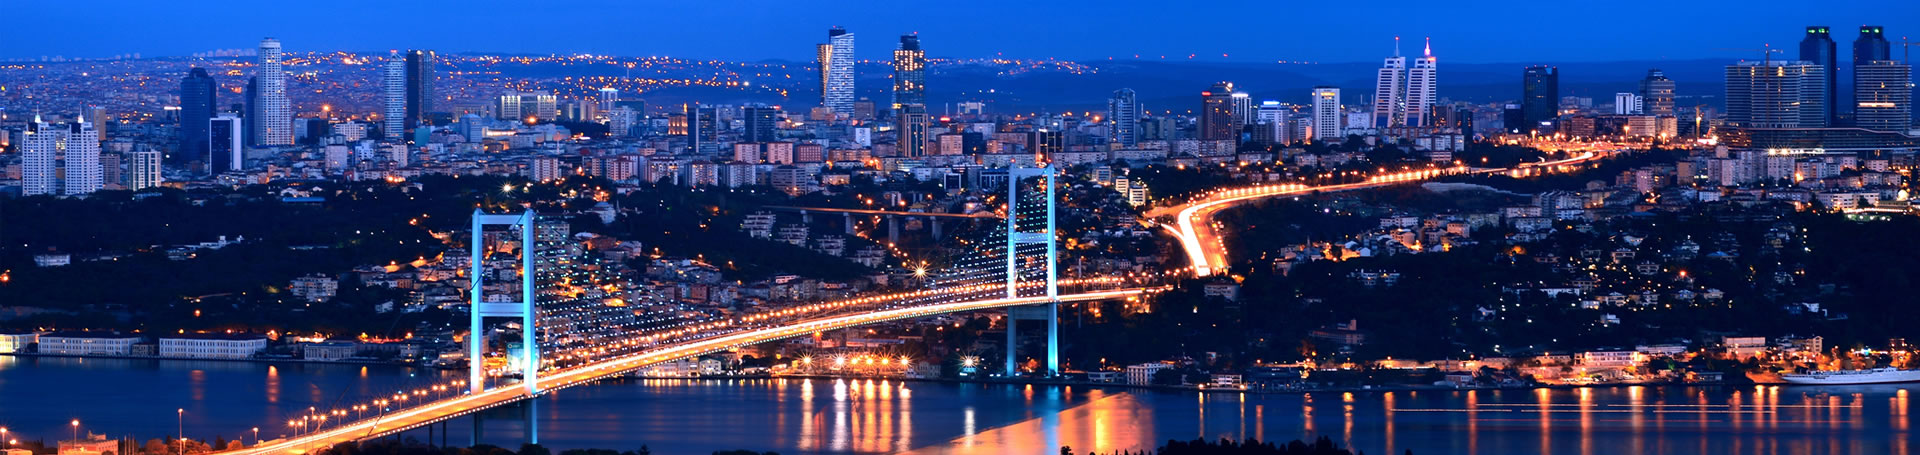 آشنایی با شهر زیبای استانبول